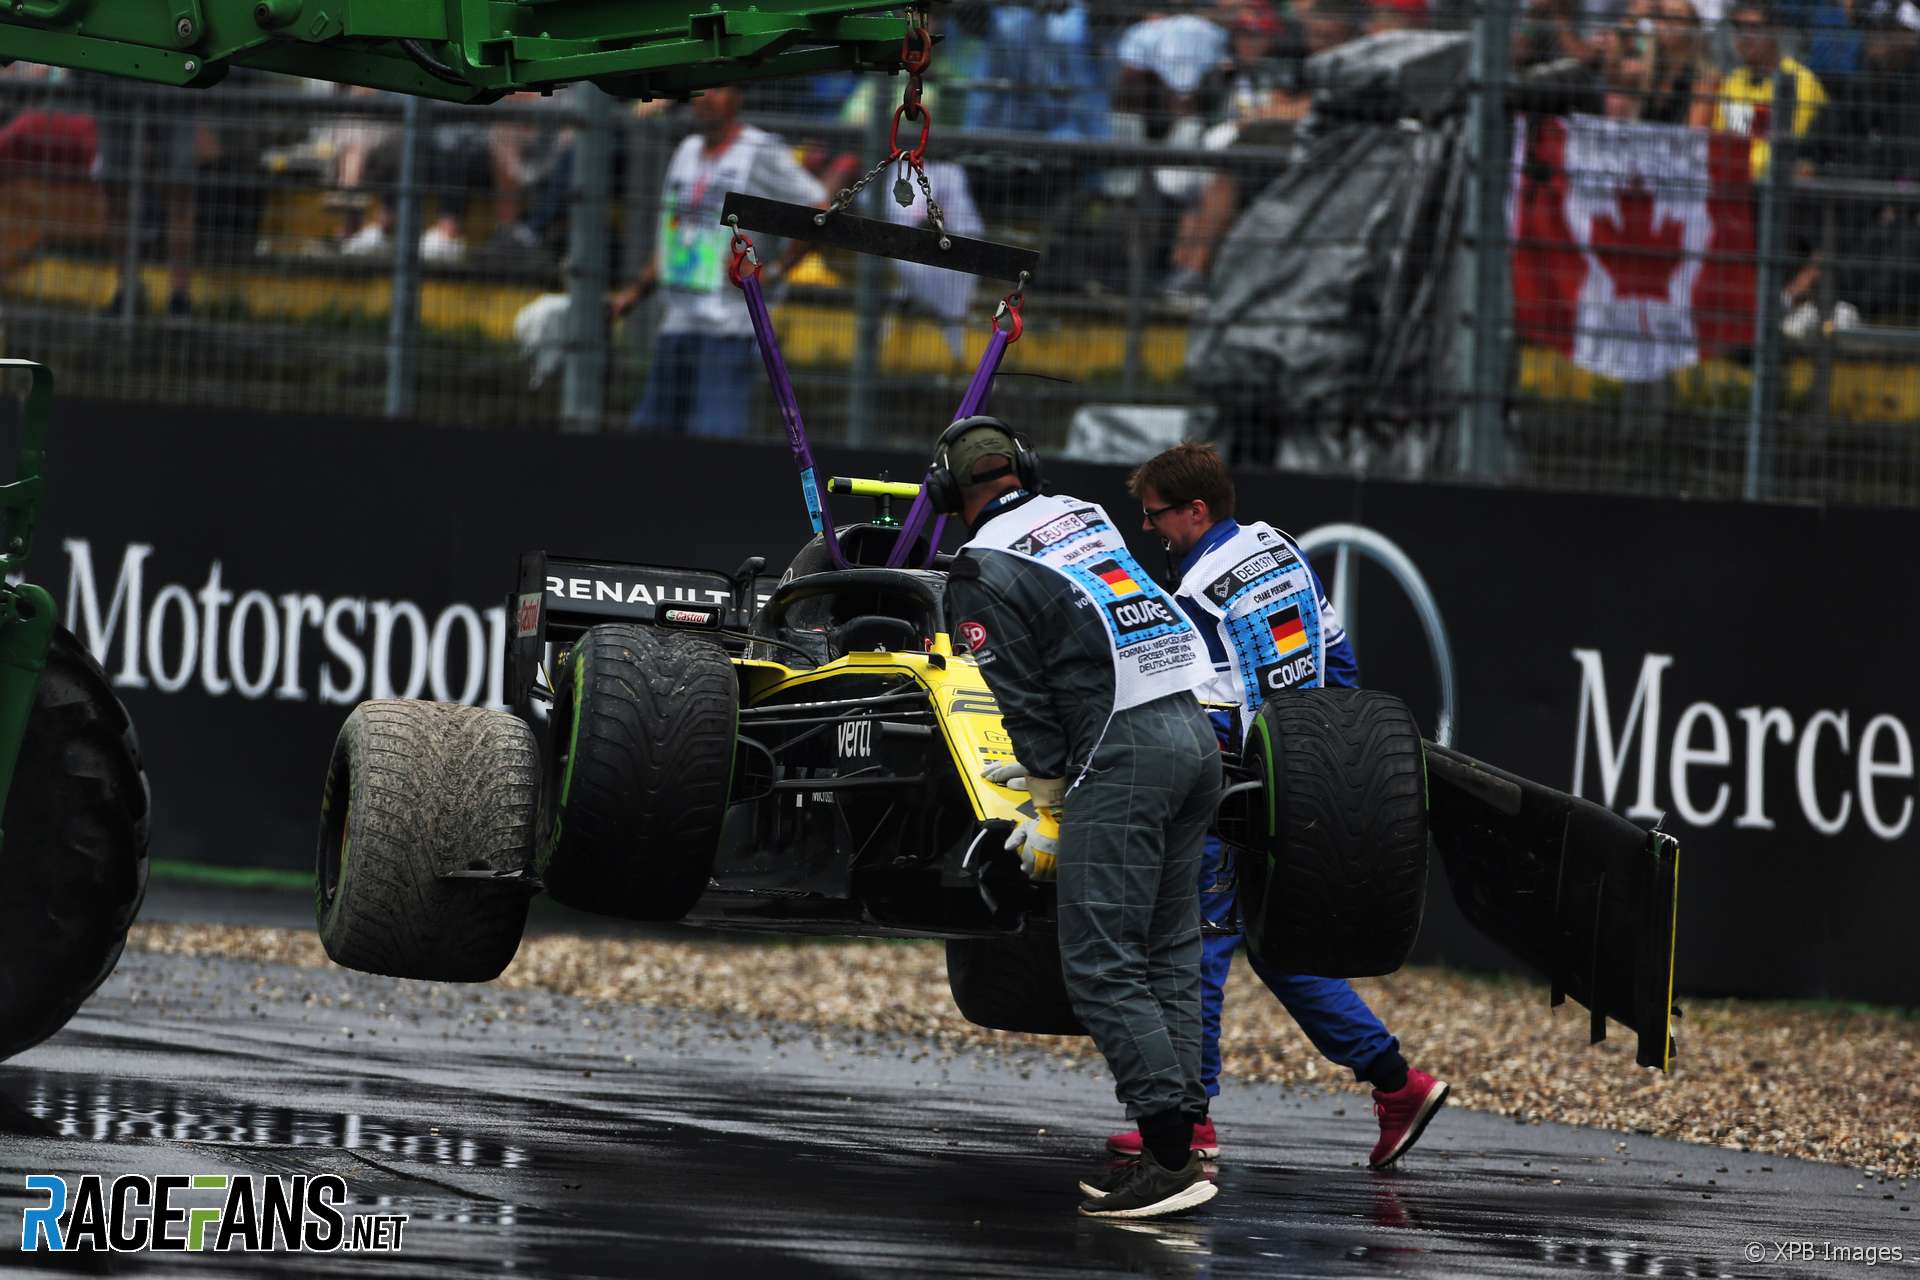 Nico Hulkenberg, Renault, Hockenheimring, 2019